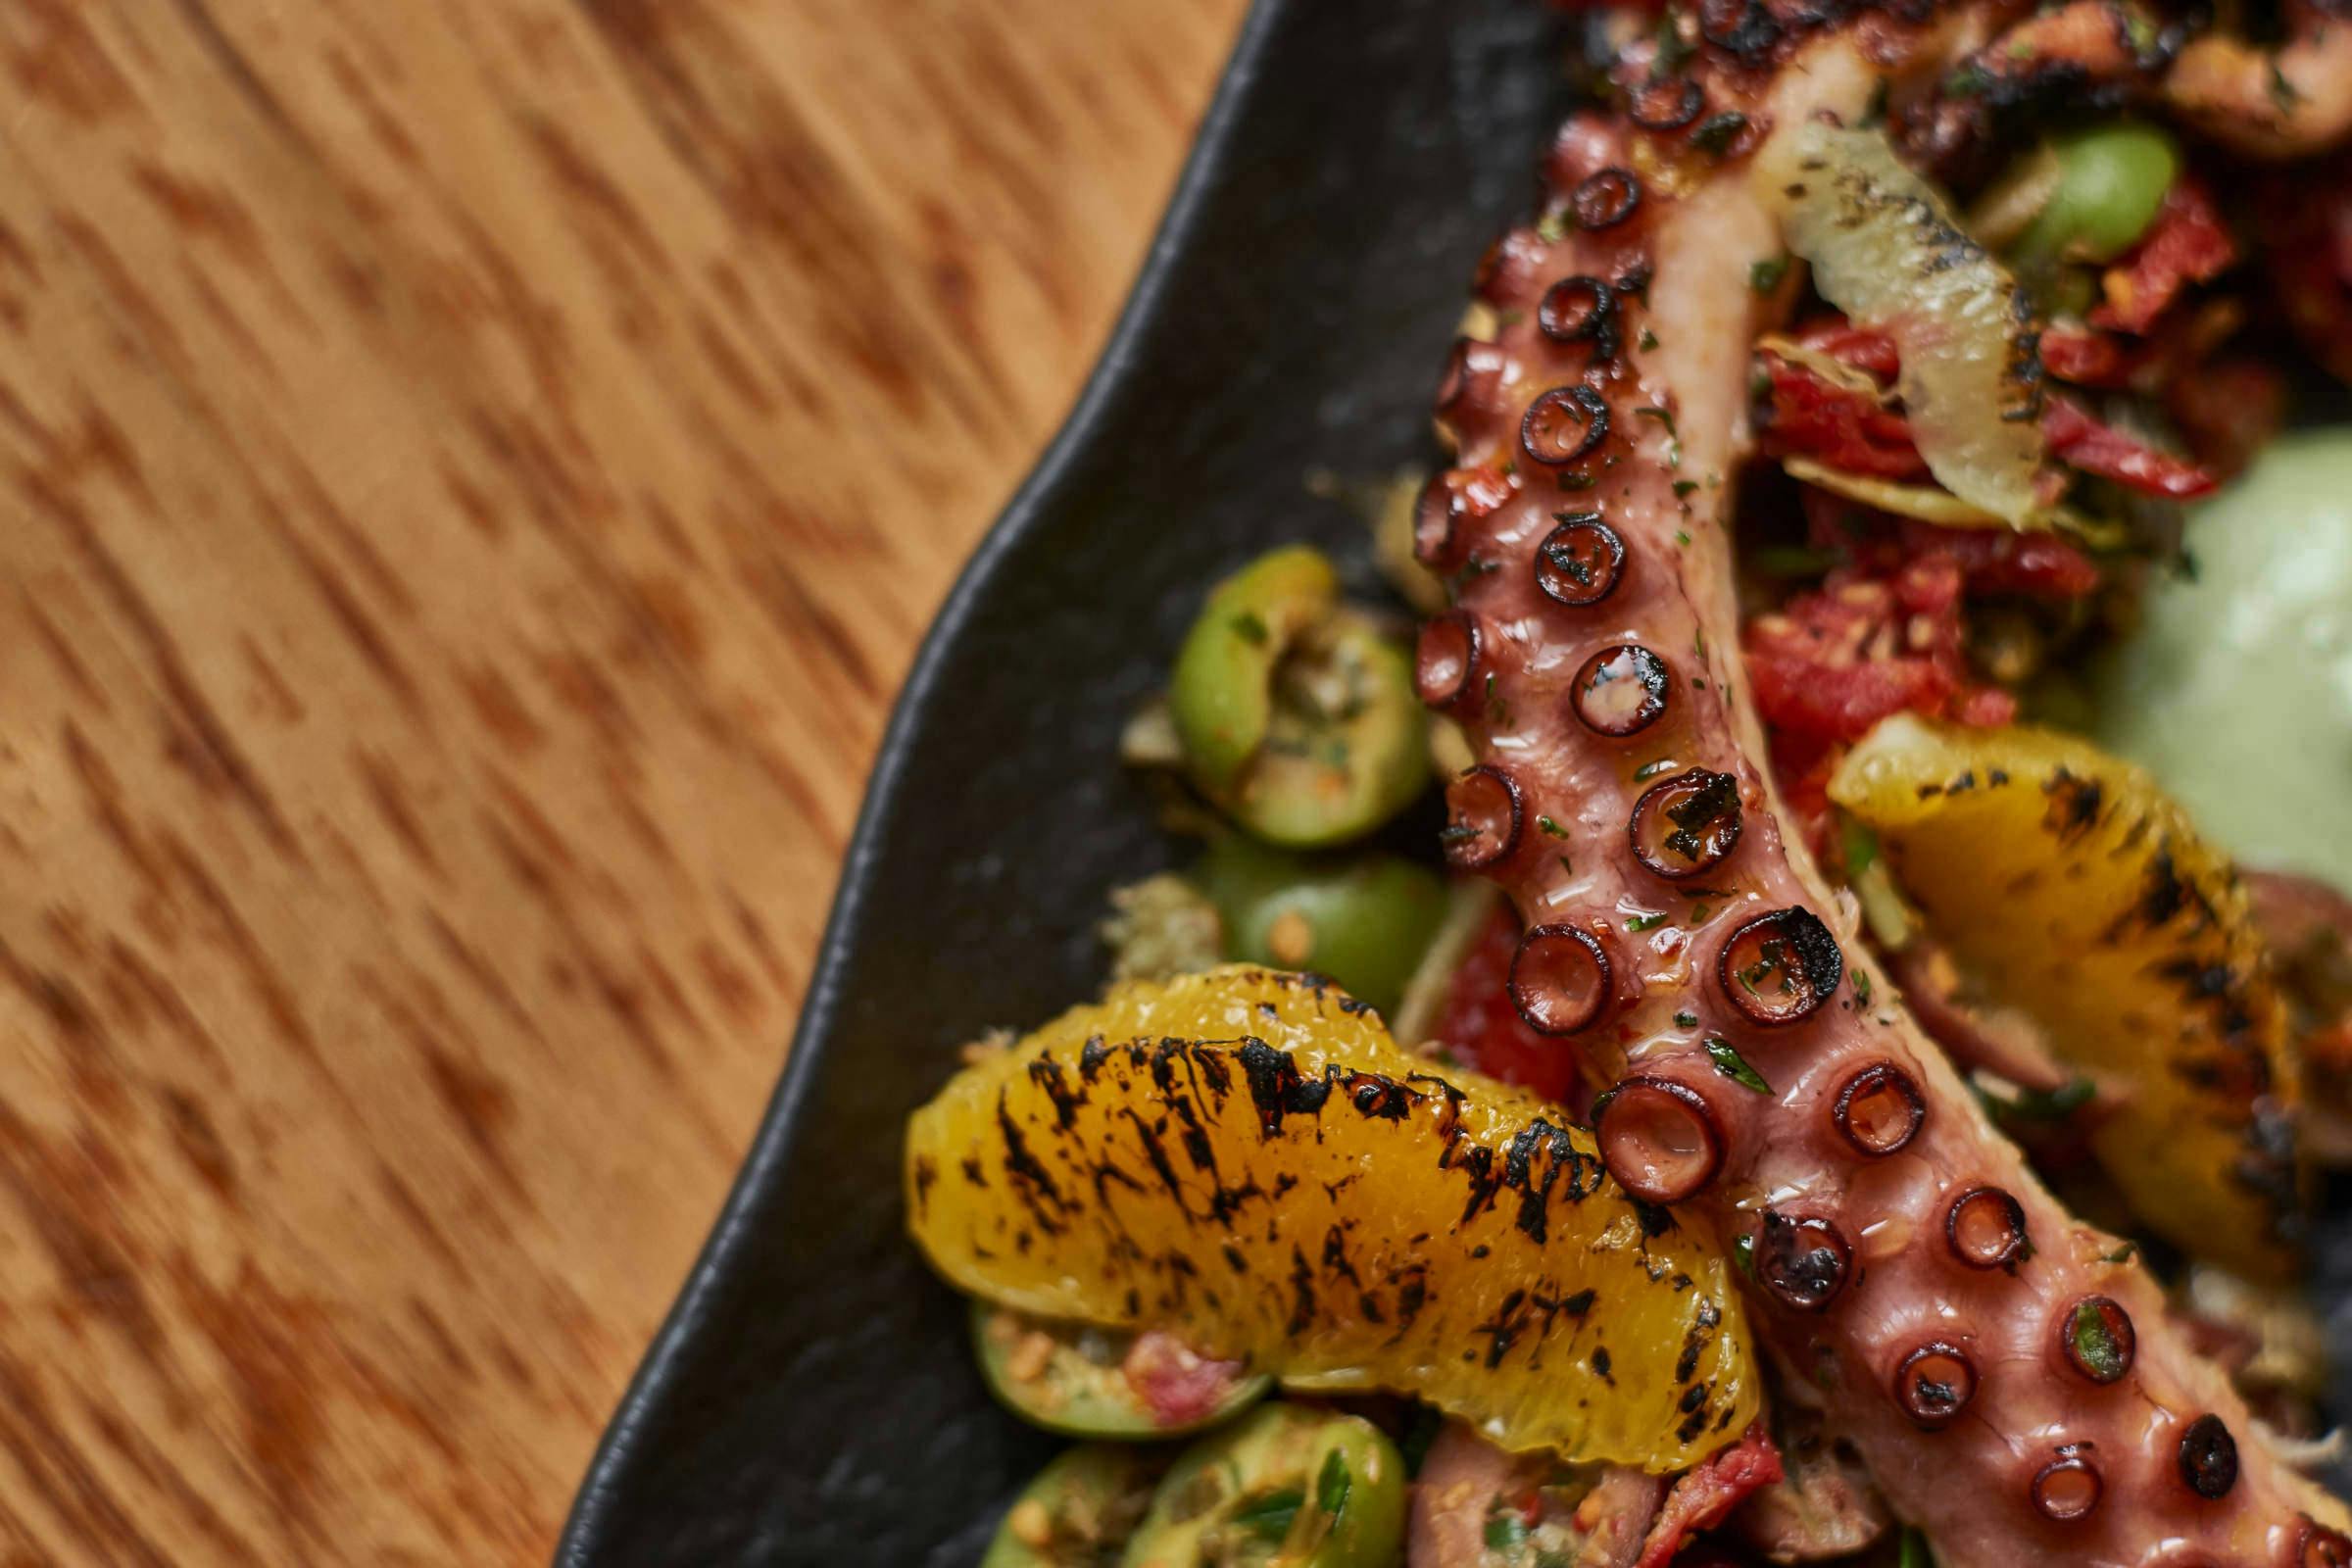 Octopus dish for Bethlehem, PA based restaurant